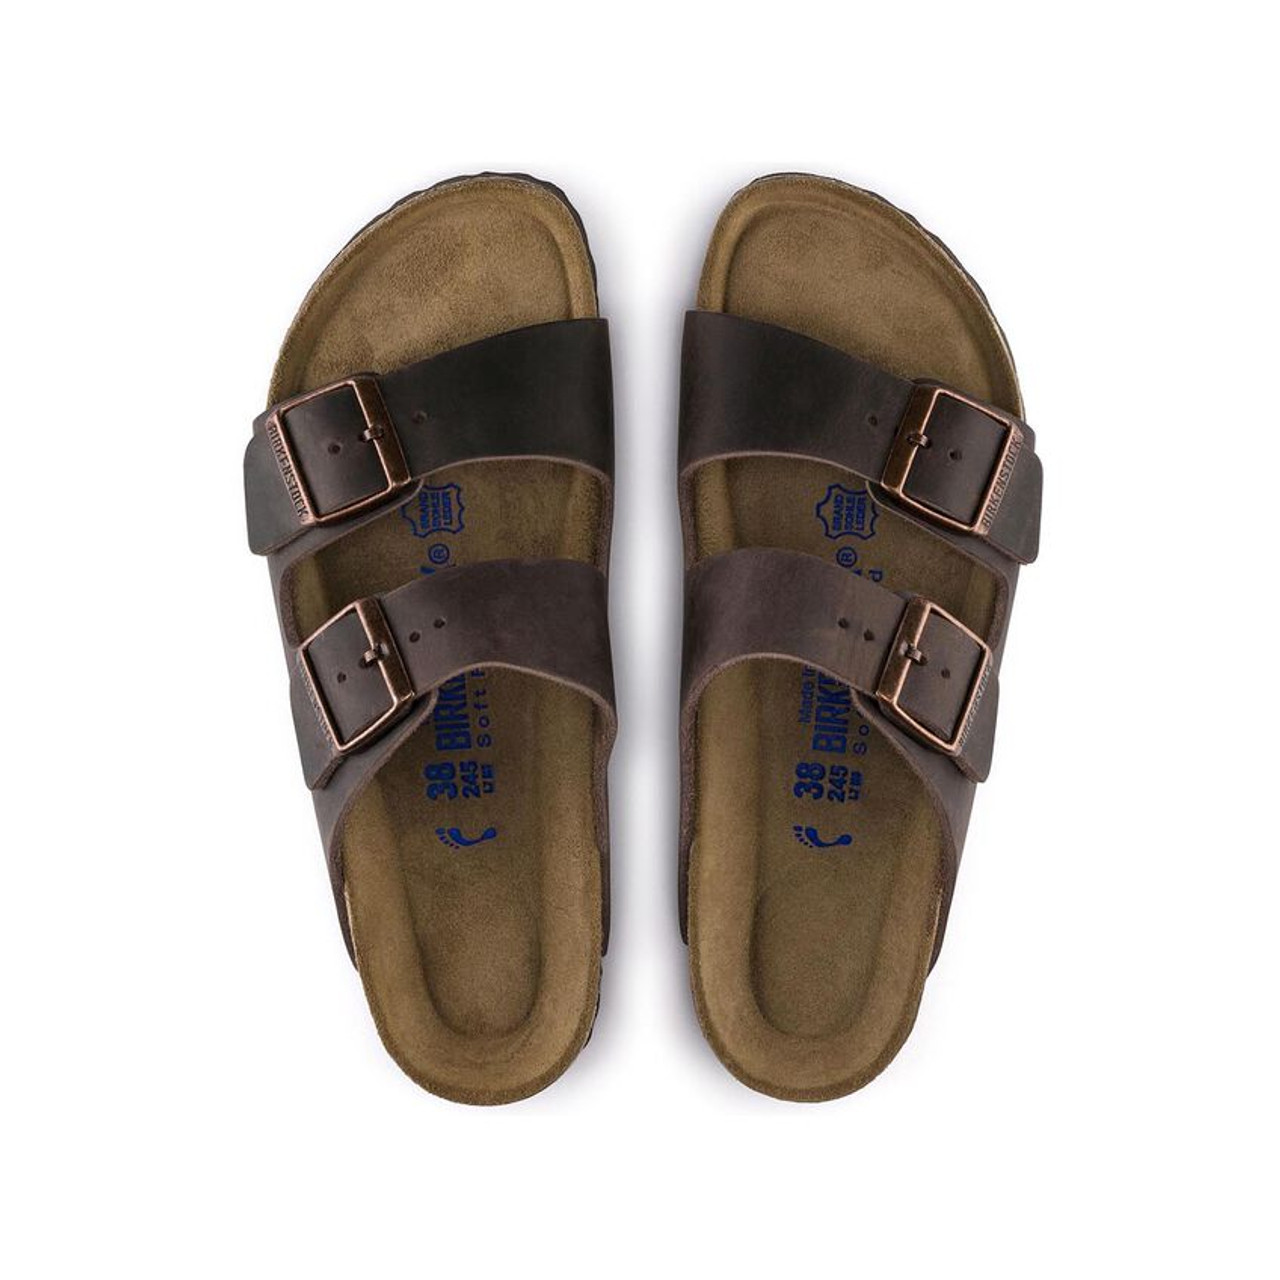 Næsten inflation Generalife Birkenstock - Arizona Sandal Soft Footbed - Habana Oiled Leather